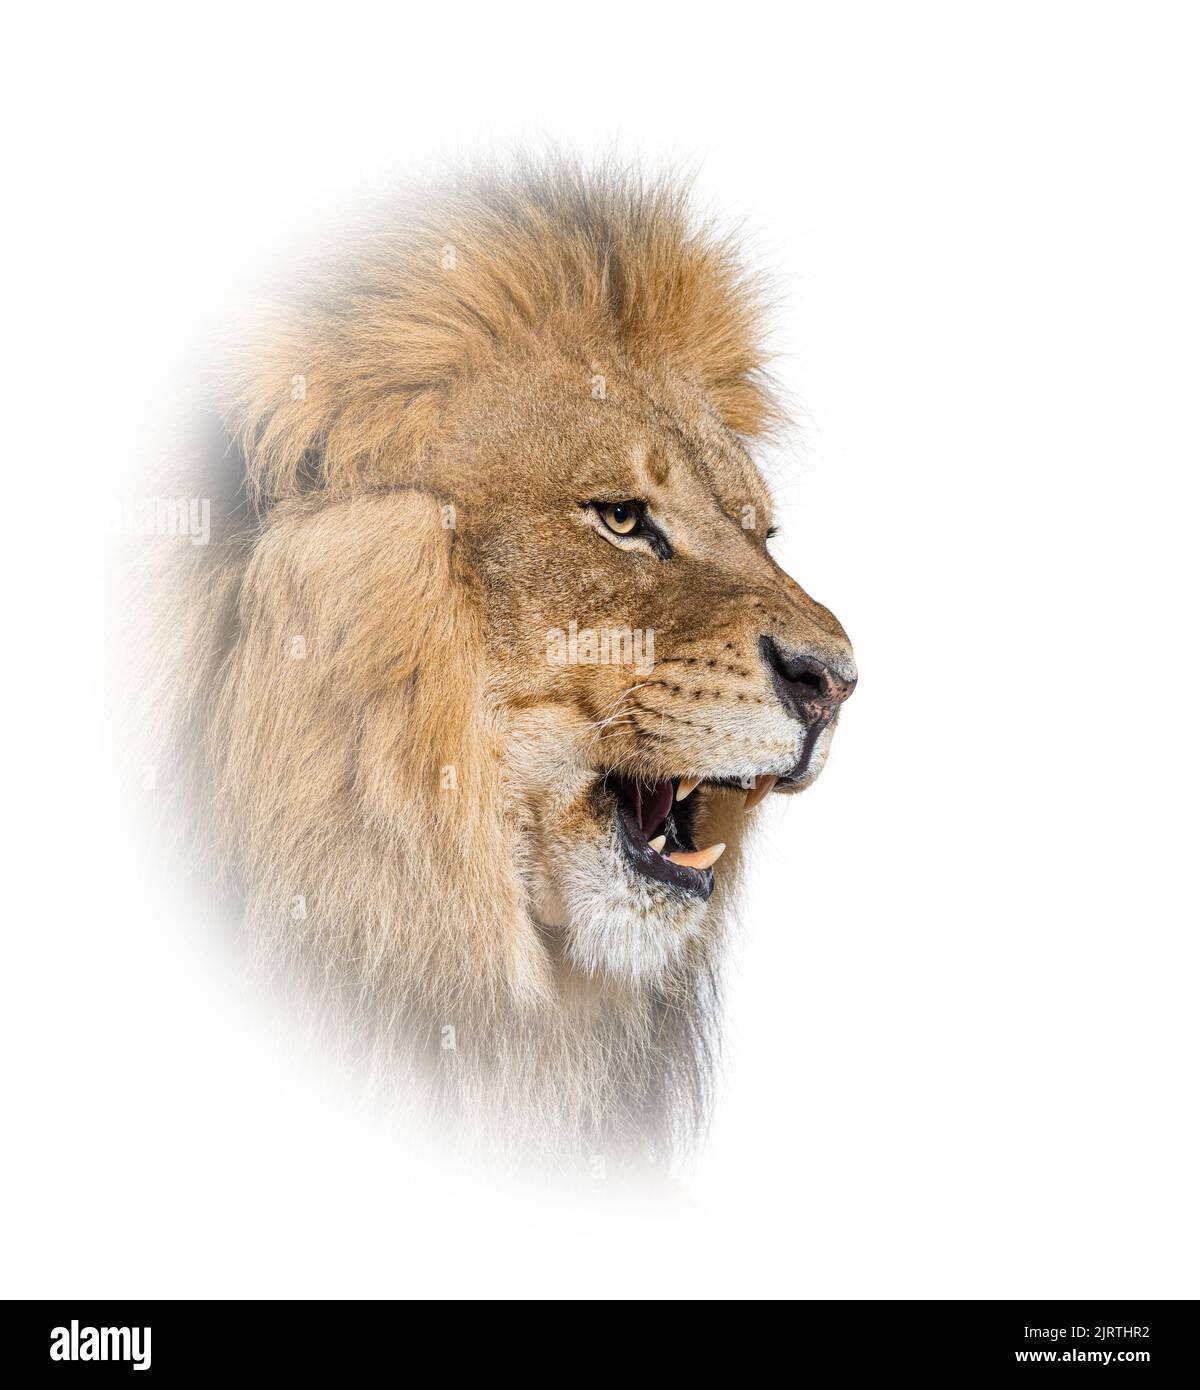 Leone adulto maschio ruggente e che mostra i suoi denti, le sue zanne, panthera leo, in un cerchio bianco Foto Stock